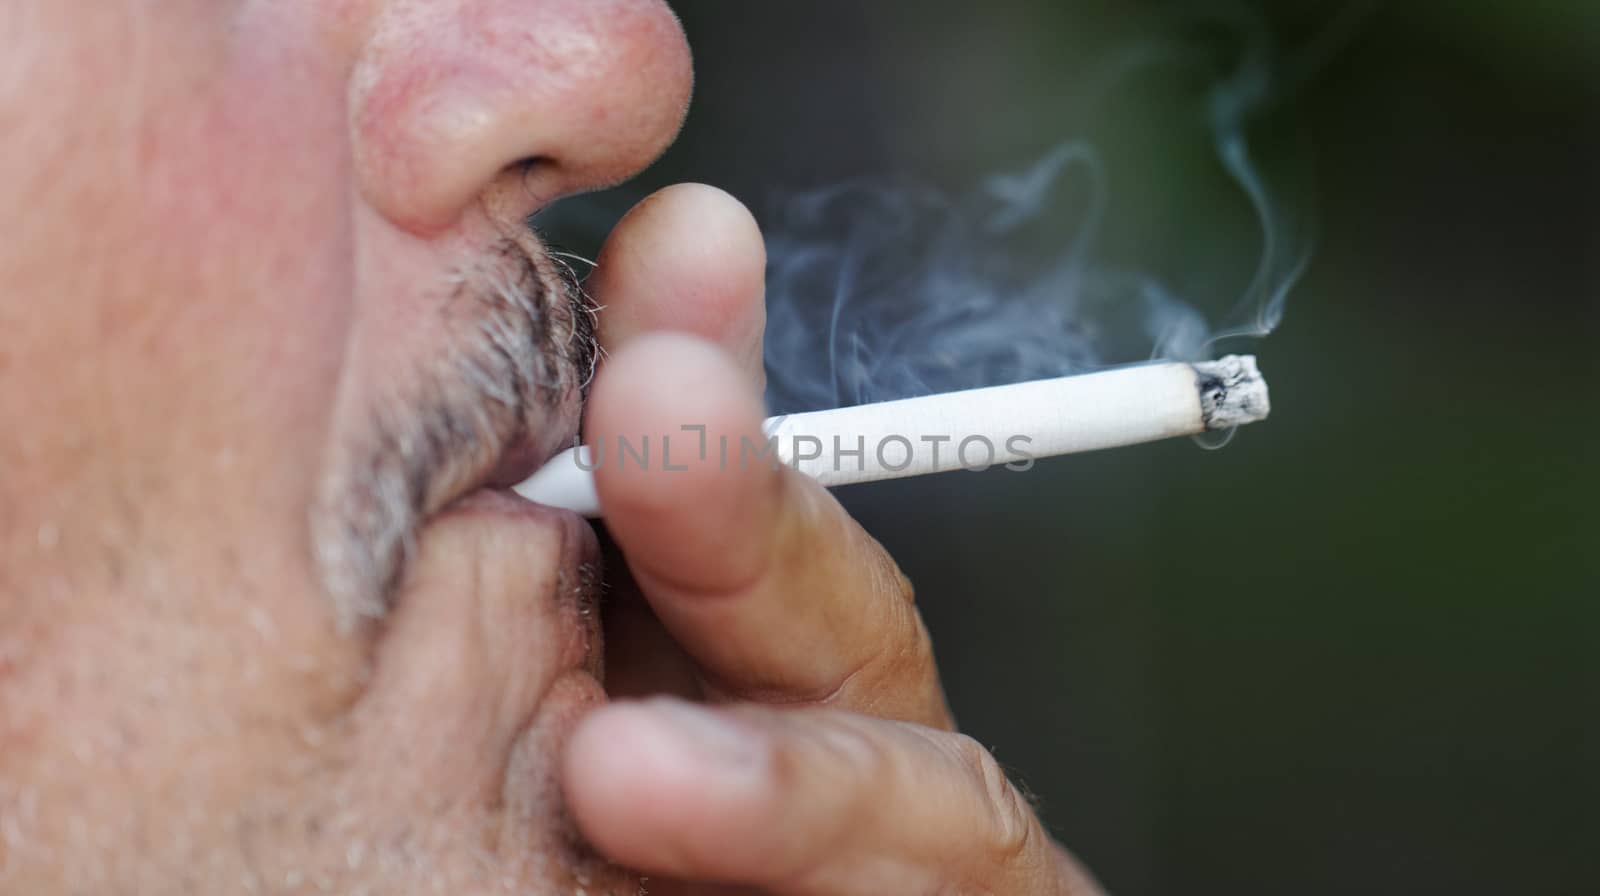 Man smoking a cigarette by NagyDodo